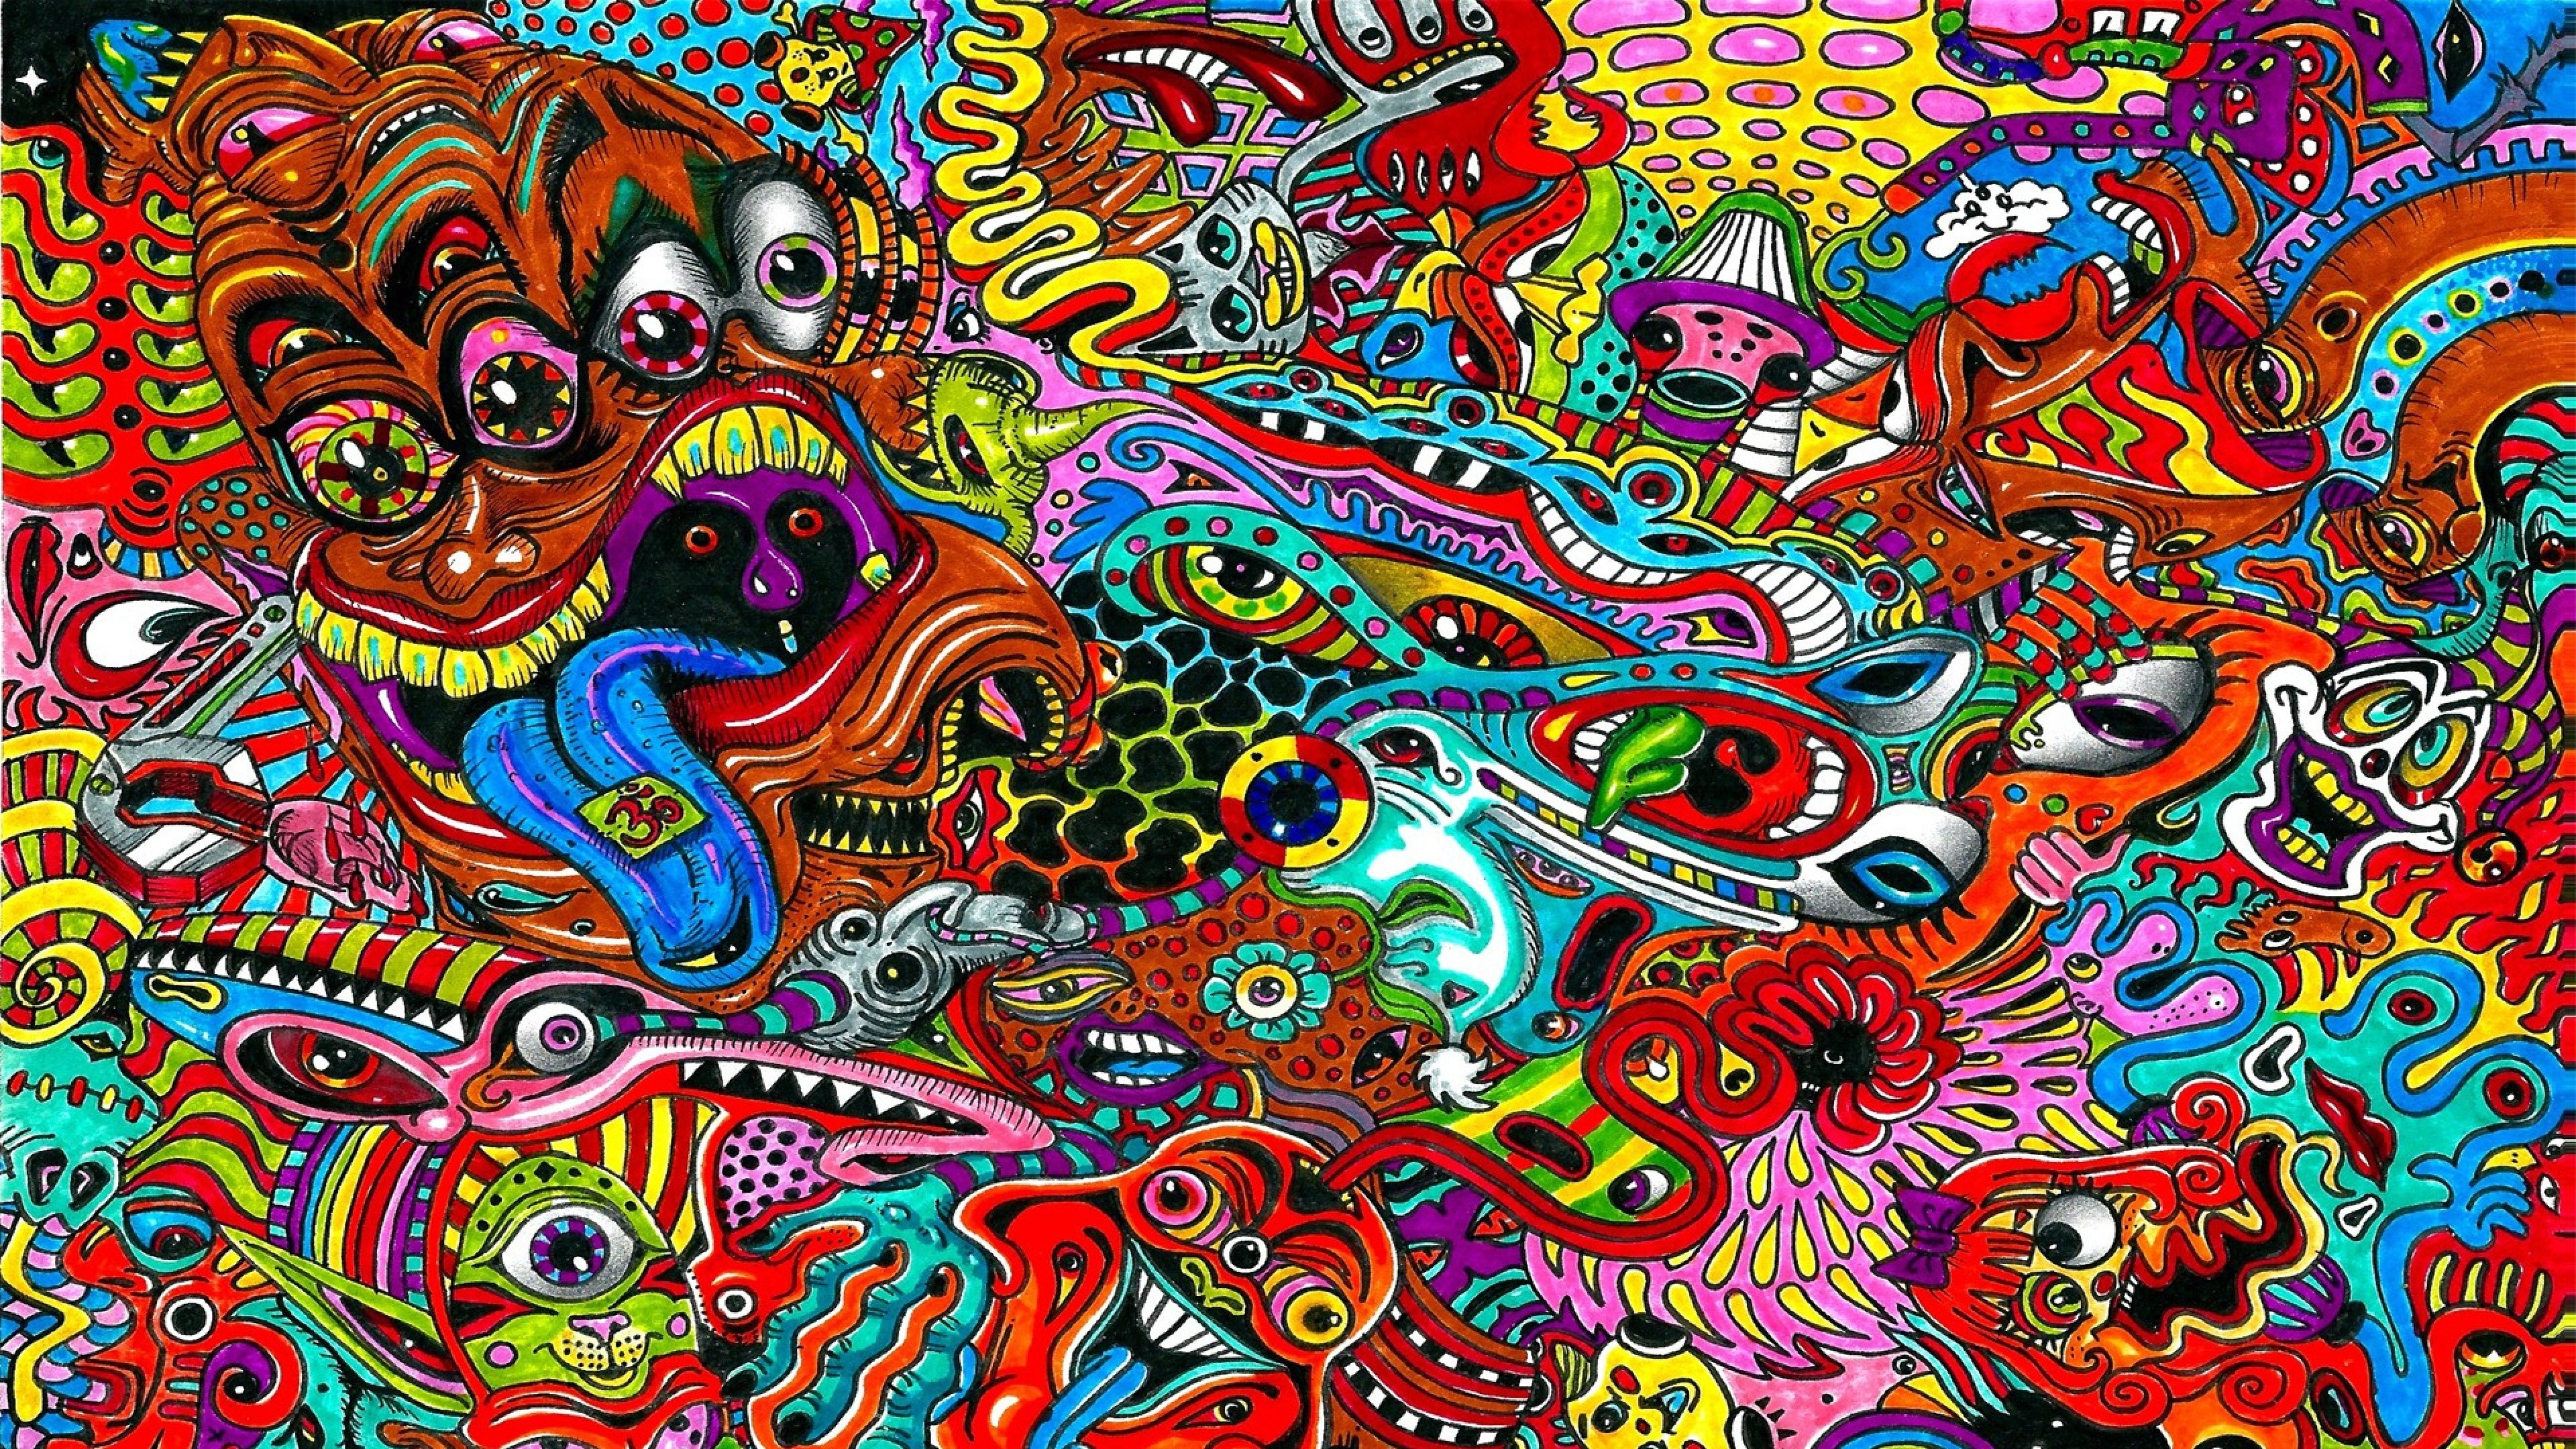 Colorful 4K Wallpaper - WallpaperSafari